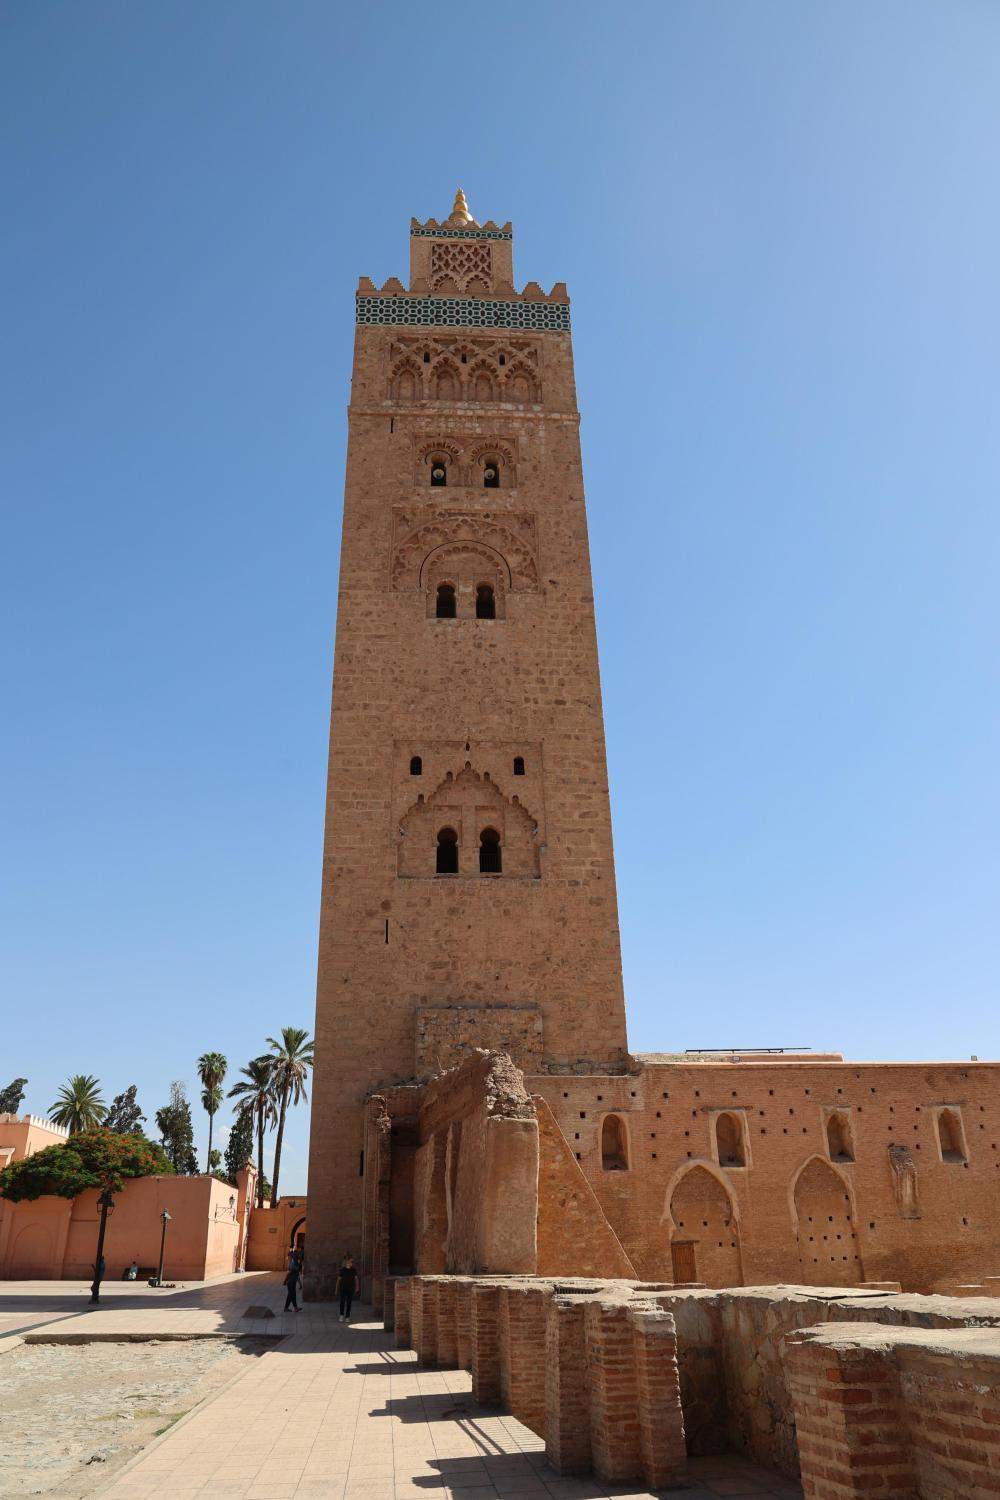 记者探访摩洛哥震中附近小镇 卫星图显示损毁严重